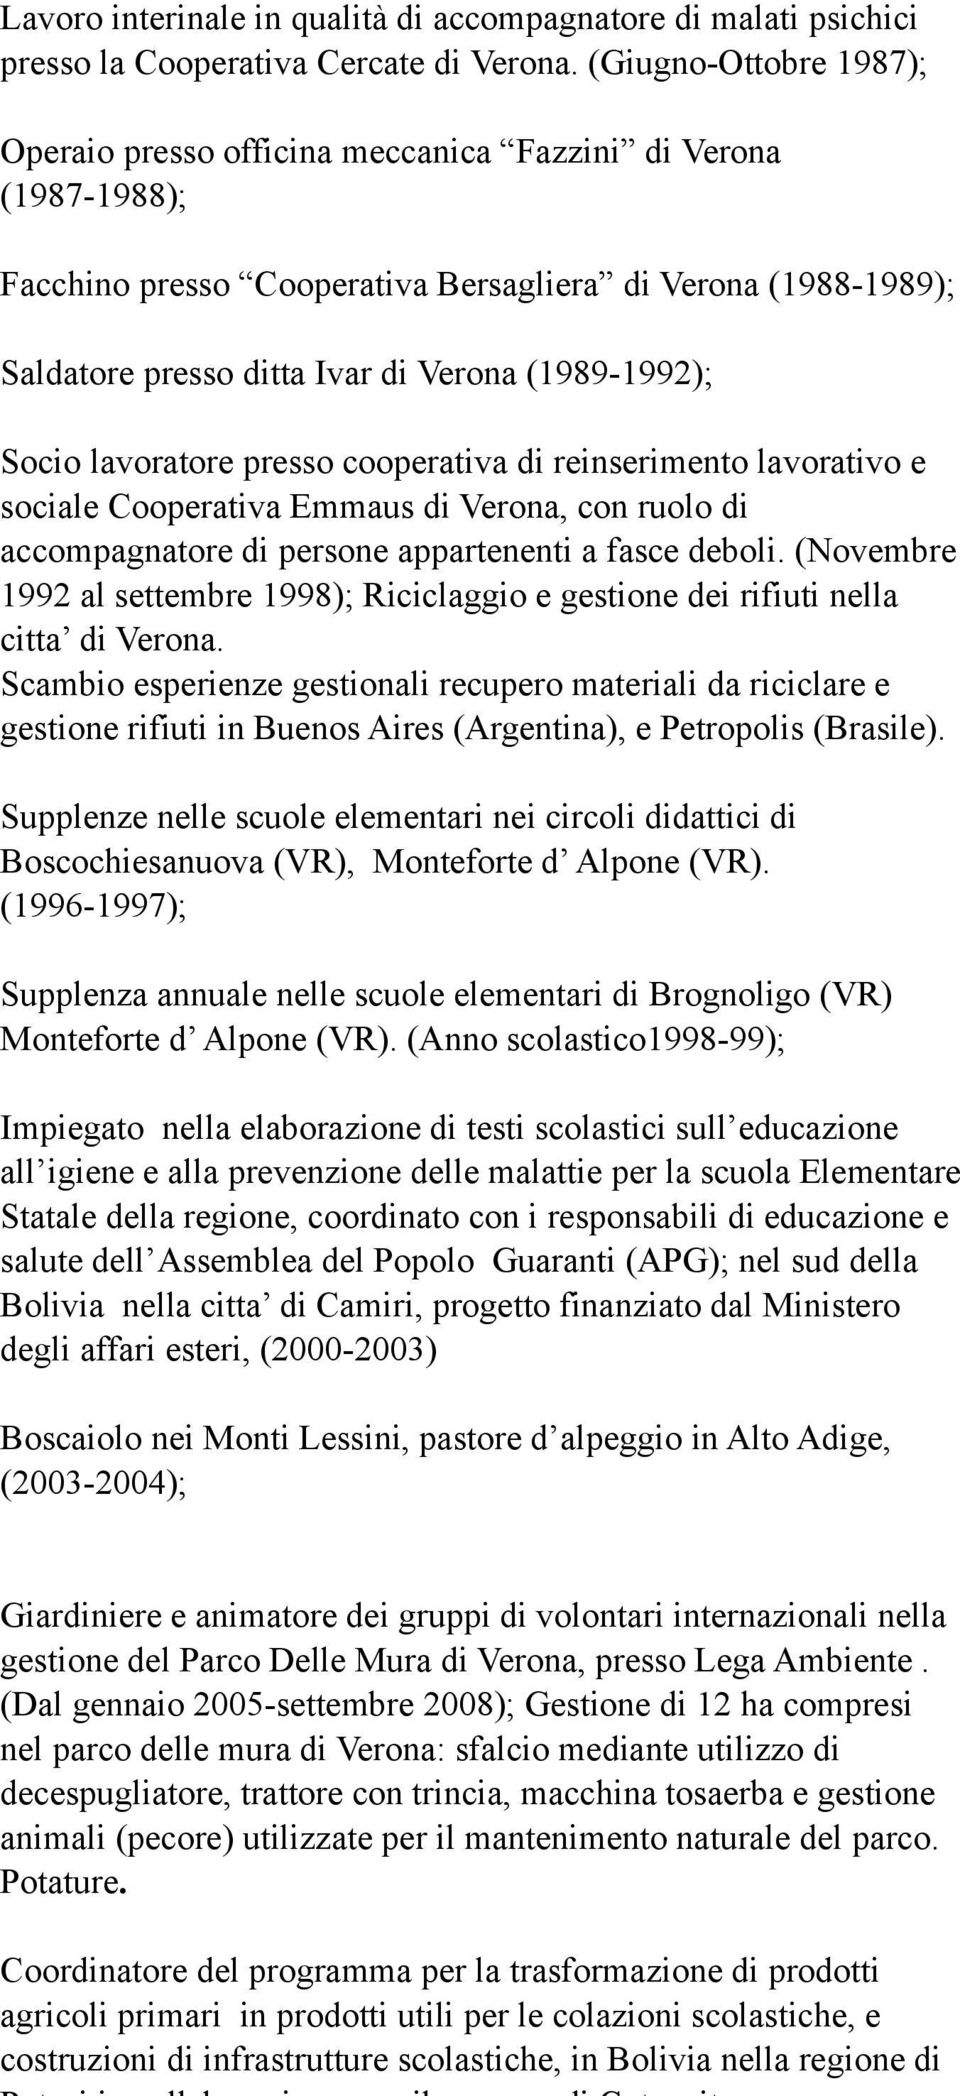 (1989-1992); Socio lavoratore presso cooperativa di reinserimento lavorativo e sociale Cooperativa Emmaus di Verona, con ruolo di accompagnatore di persone appartenenti a fasce deboli.